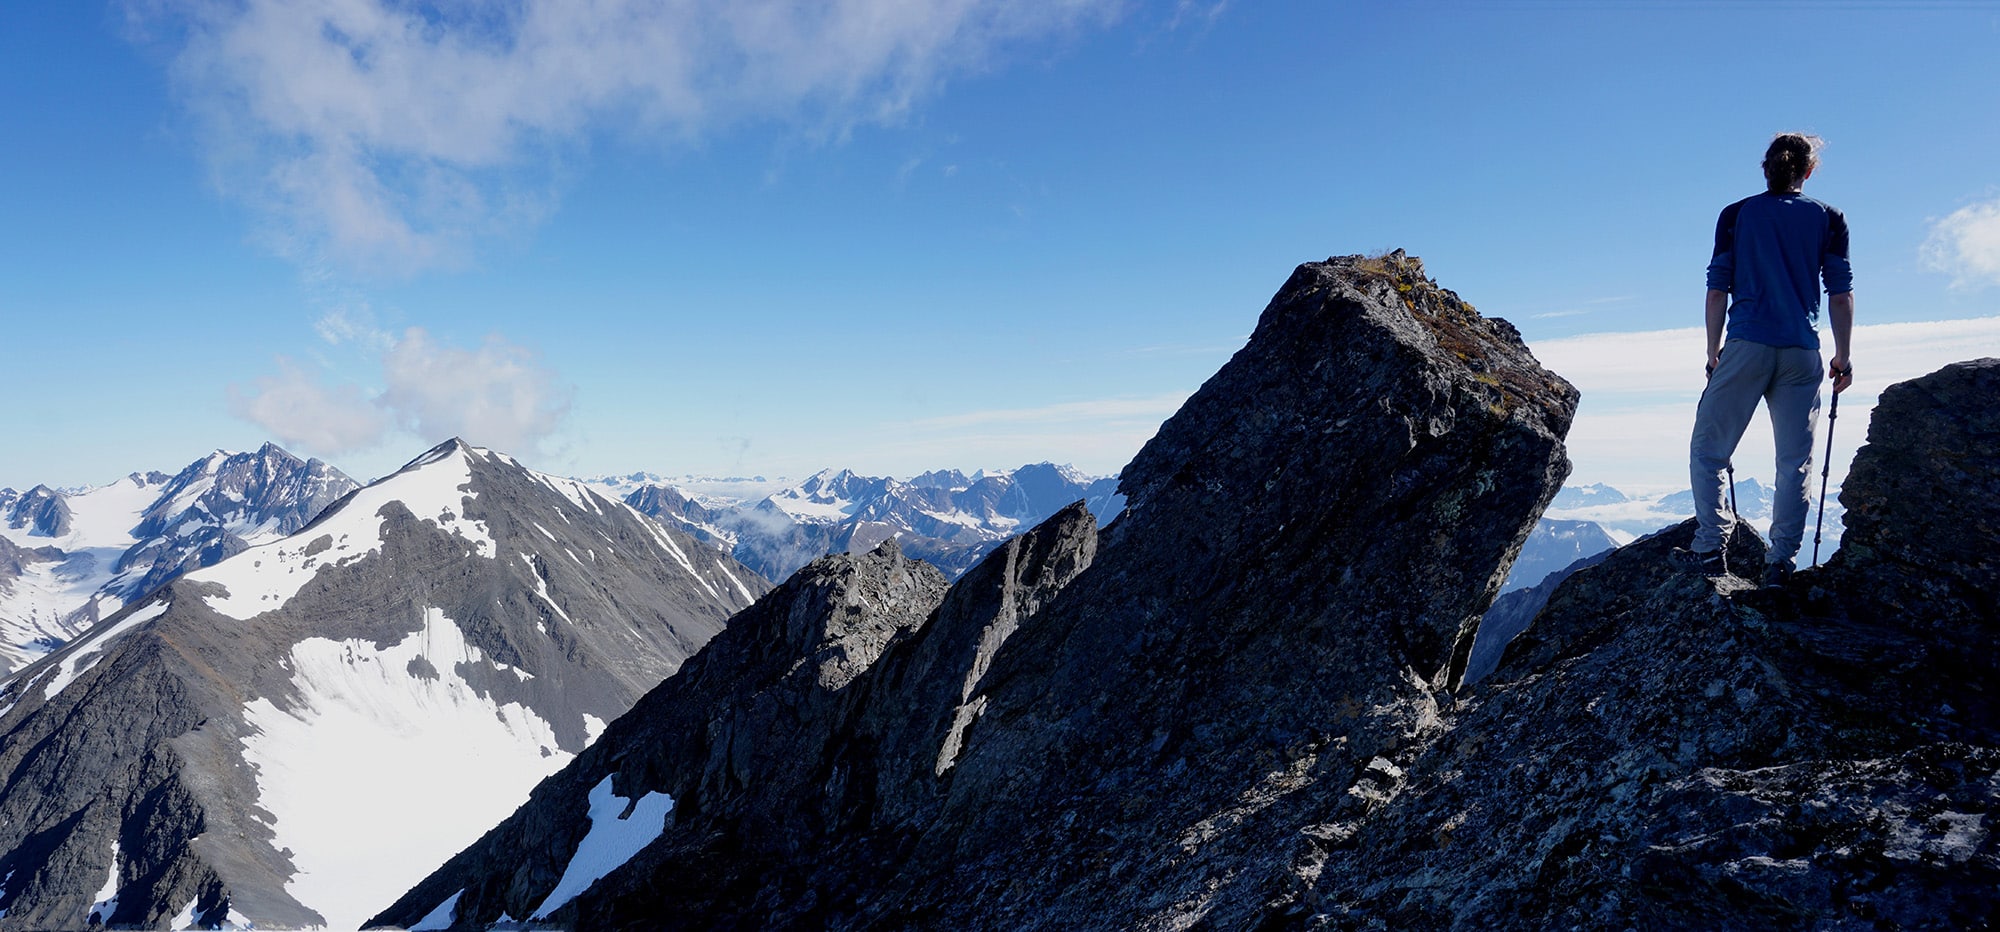 The summit of Solars Mountain on the Kenai Peninsula in Alaska